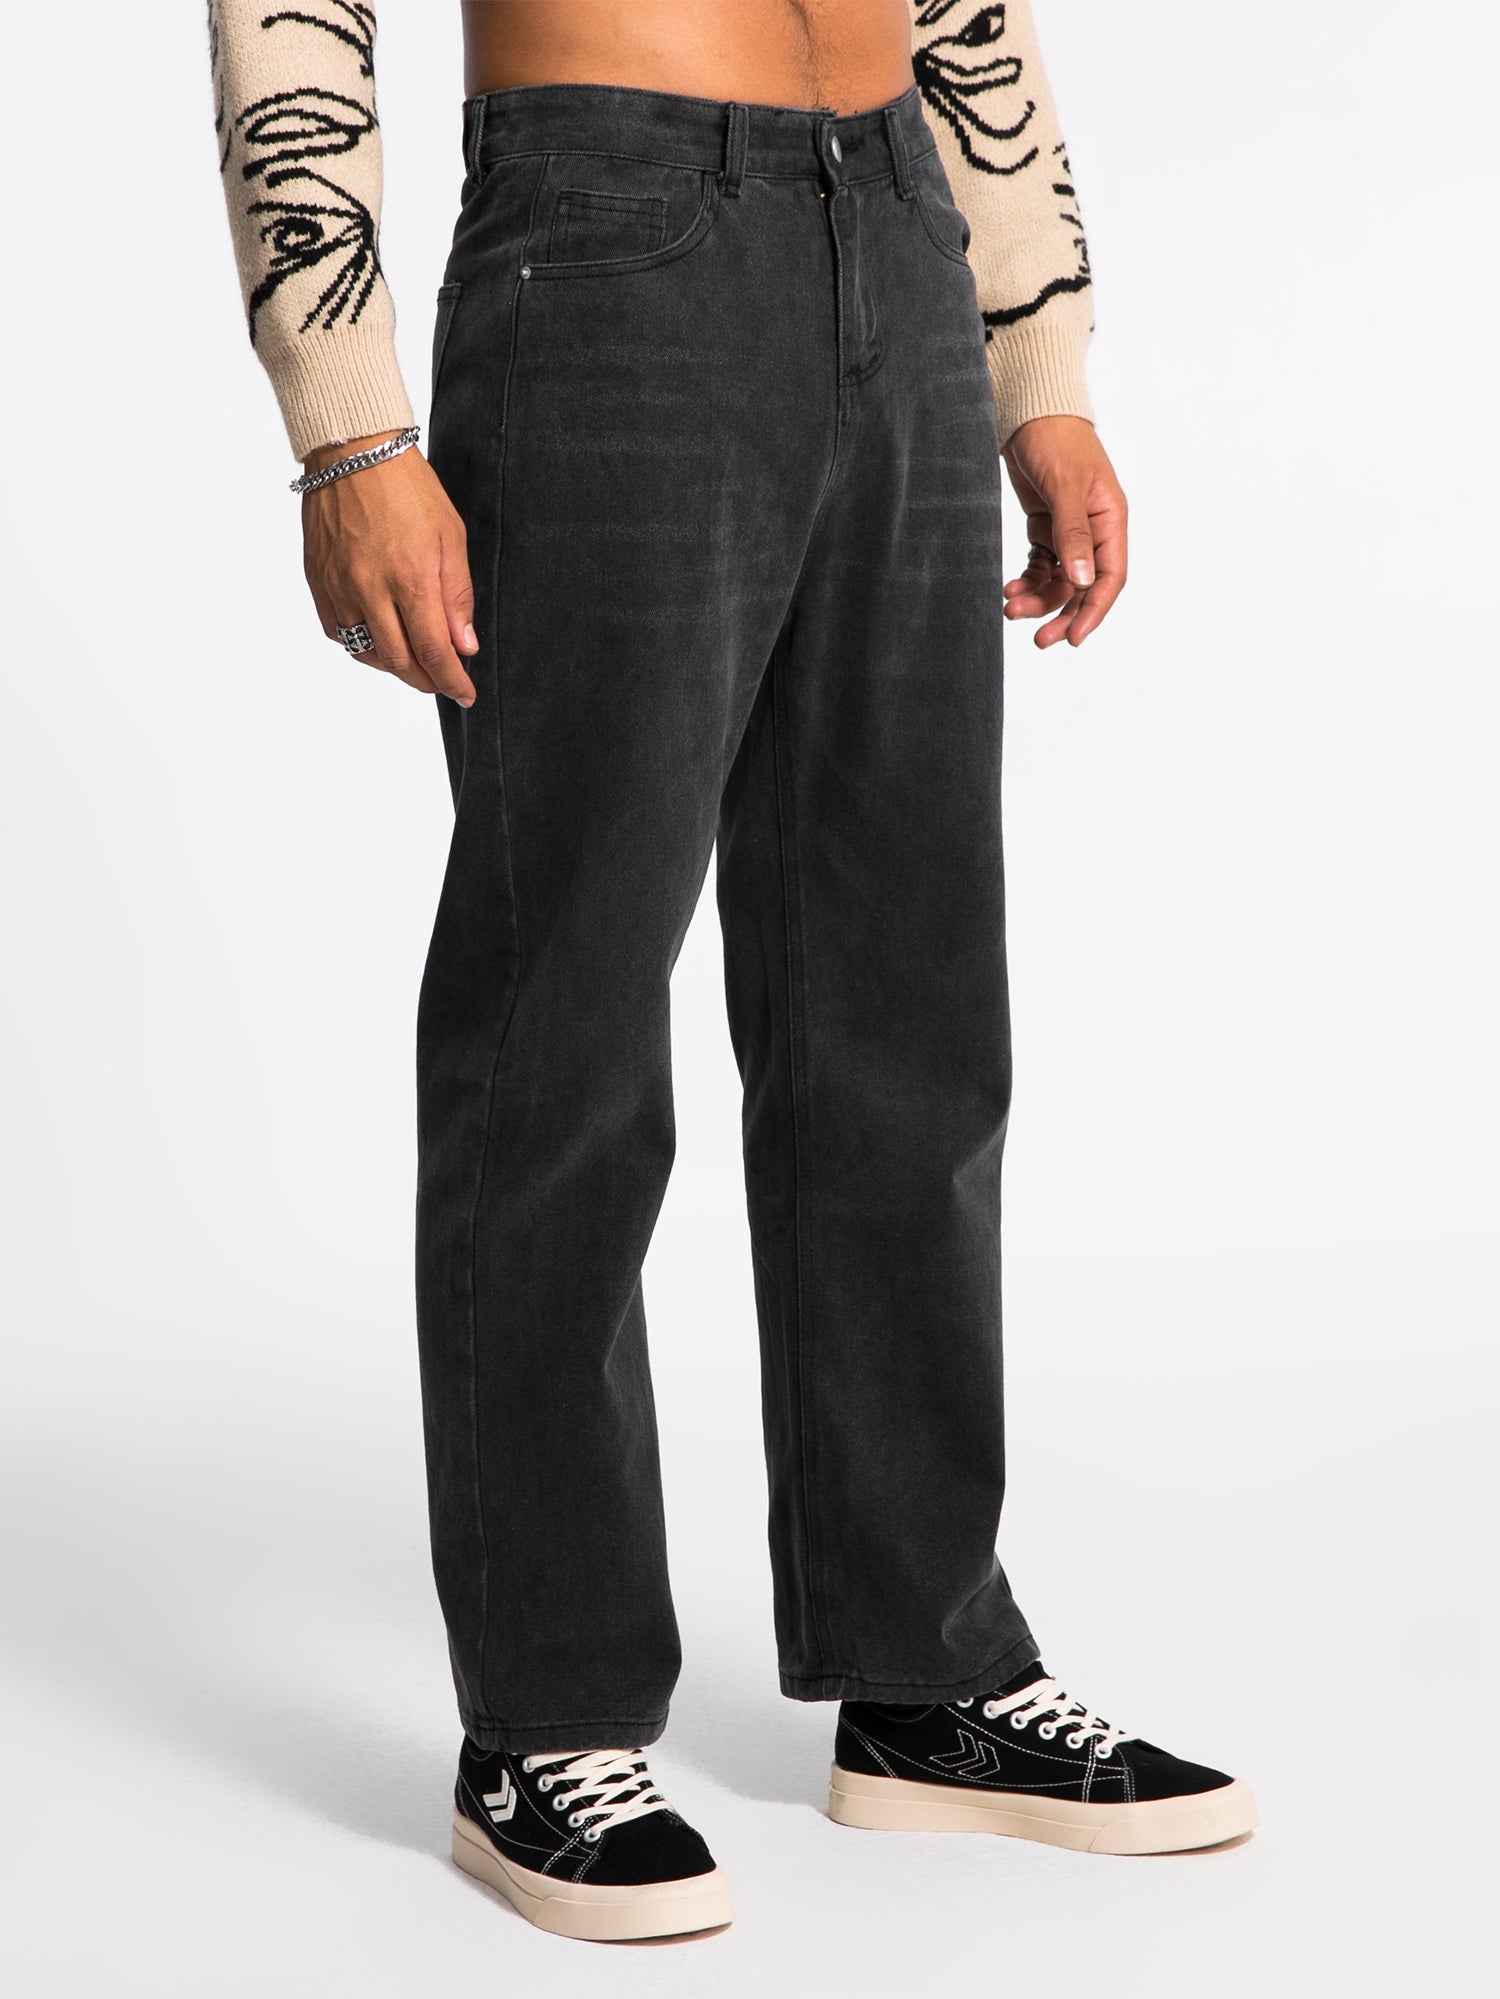 JUSTNOTAG Vintage Plain Cotton Zipper Jeans